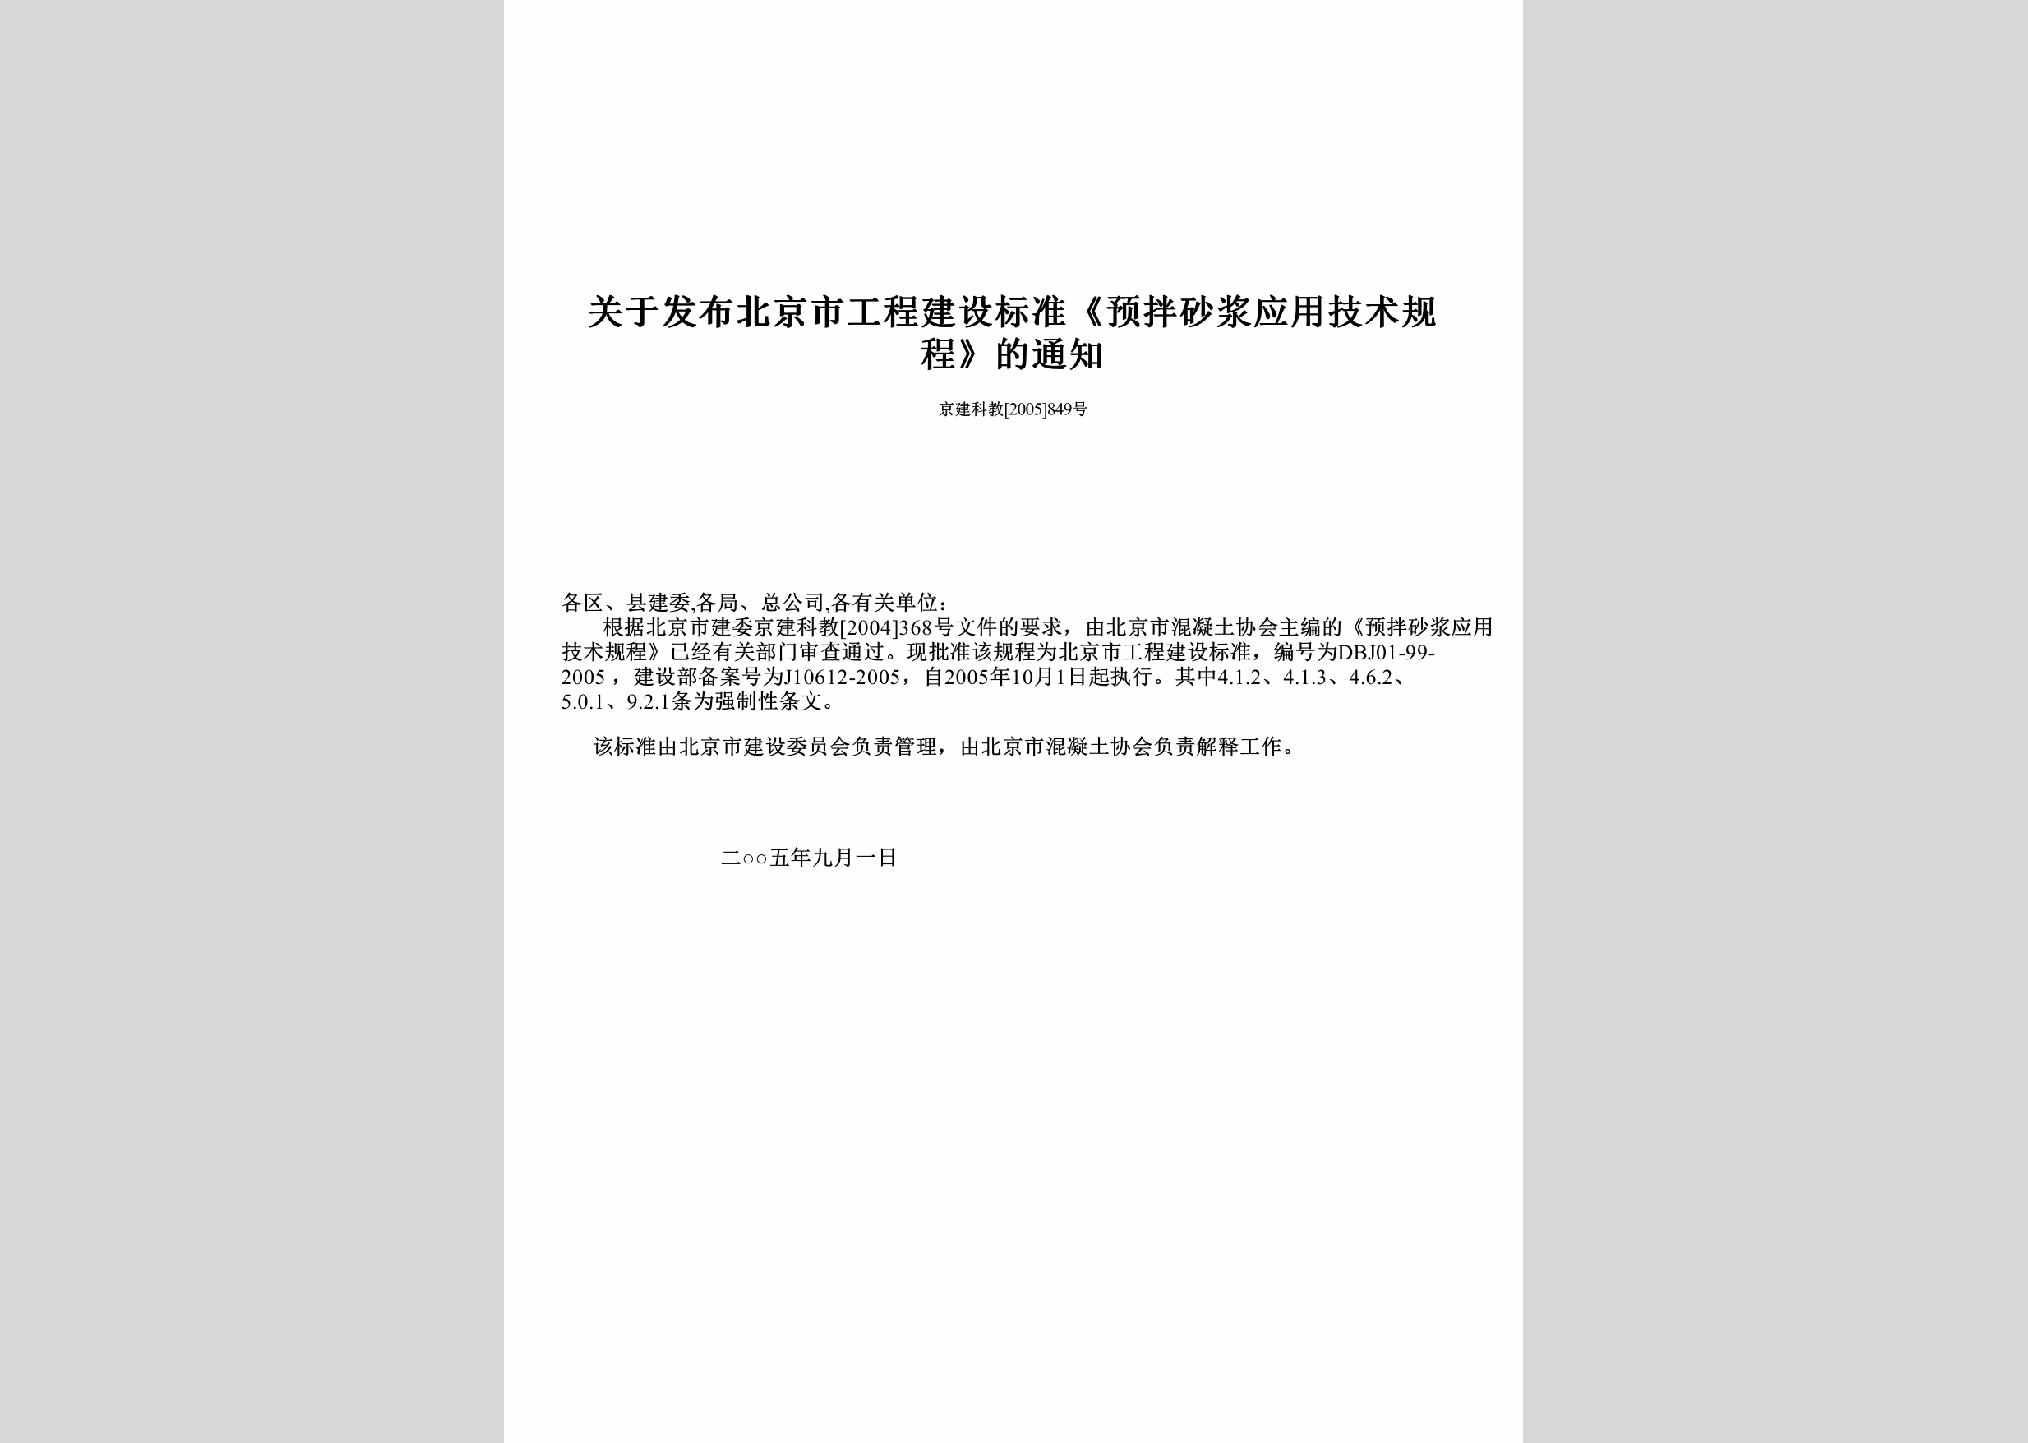 京建科教[2005]849号：关于发布北京市工程建设标准《预拌砂浆应用技术规程》的通知